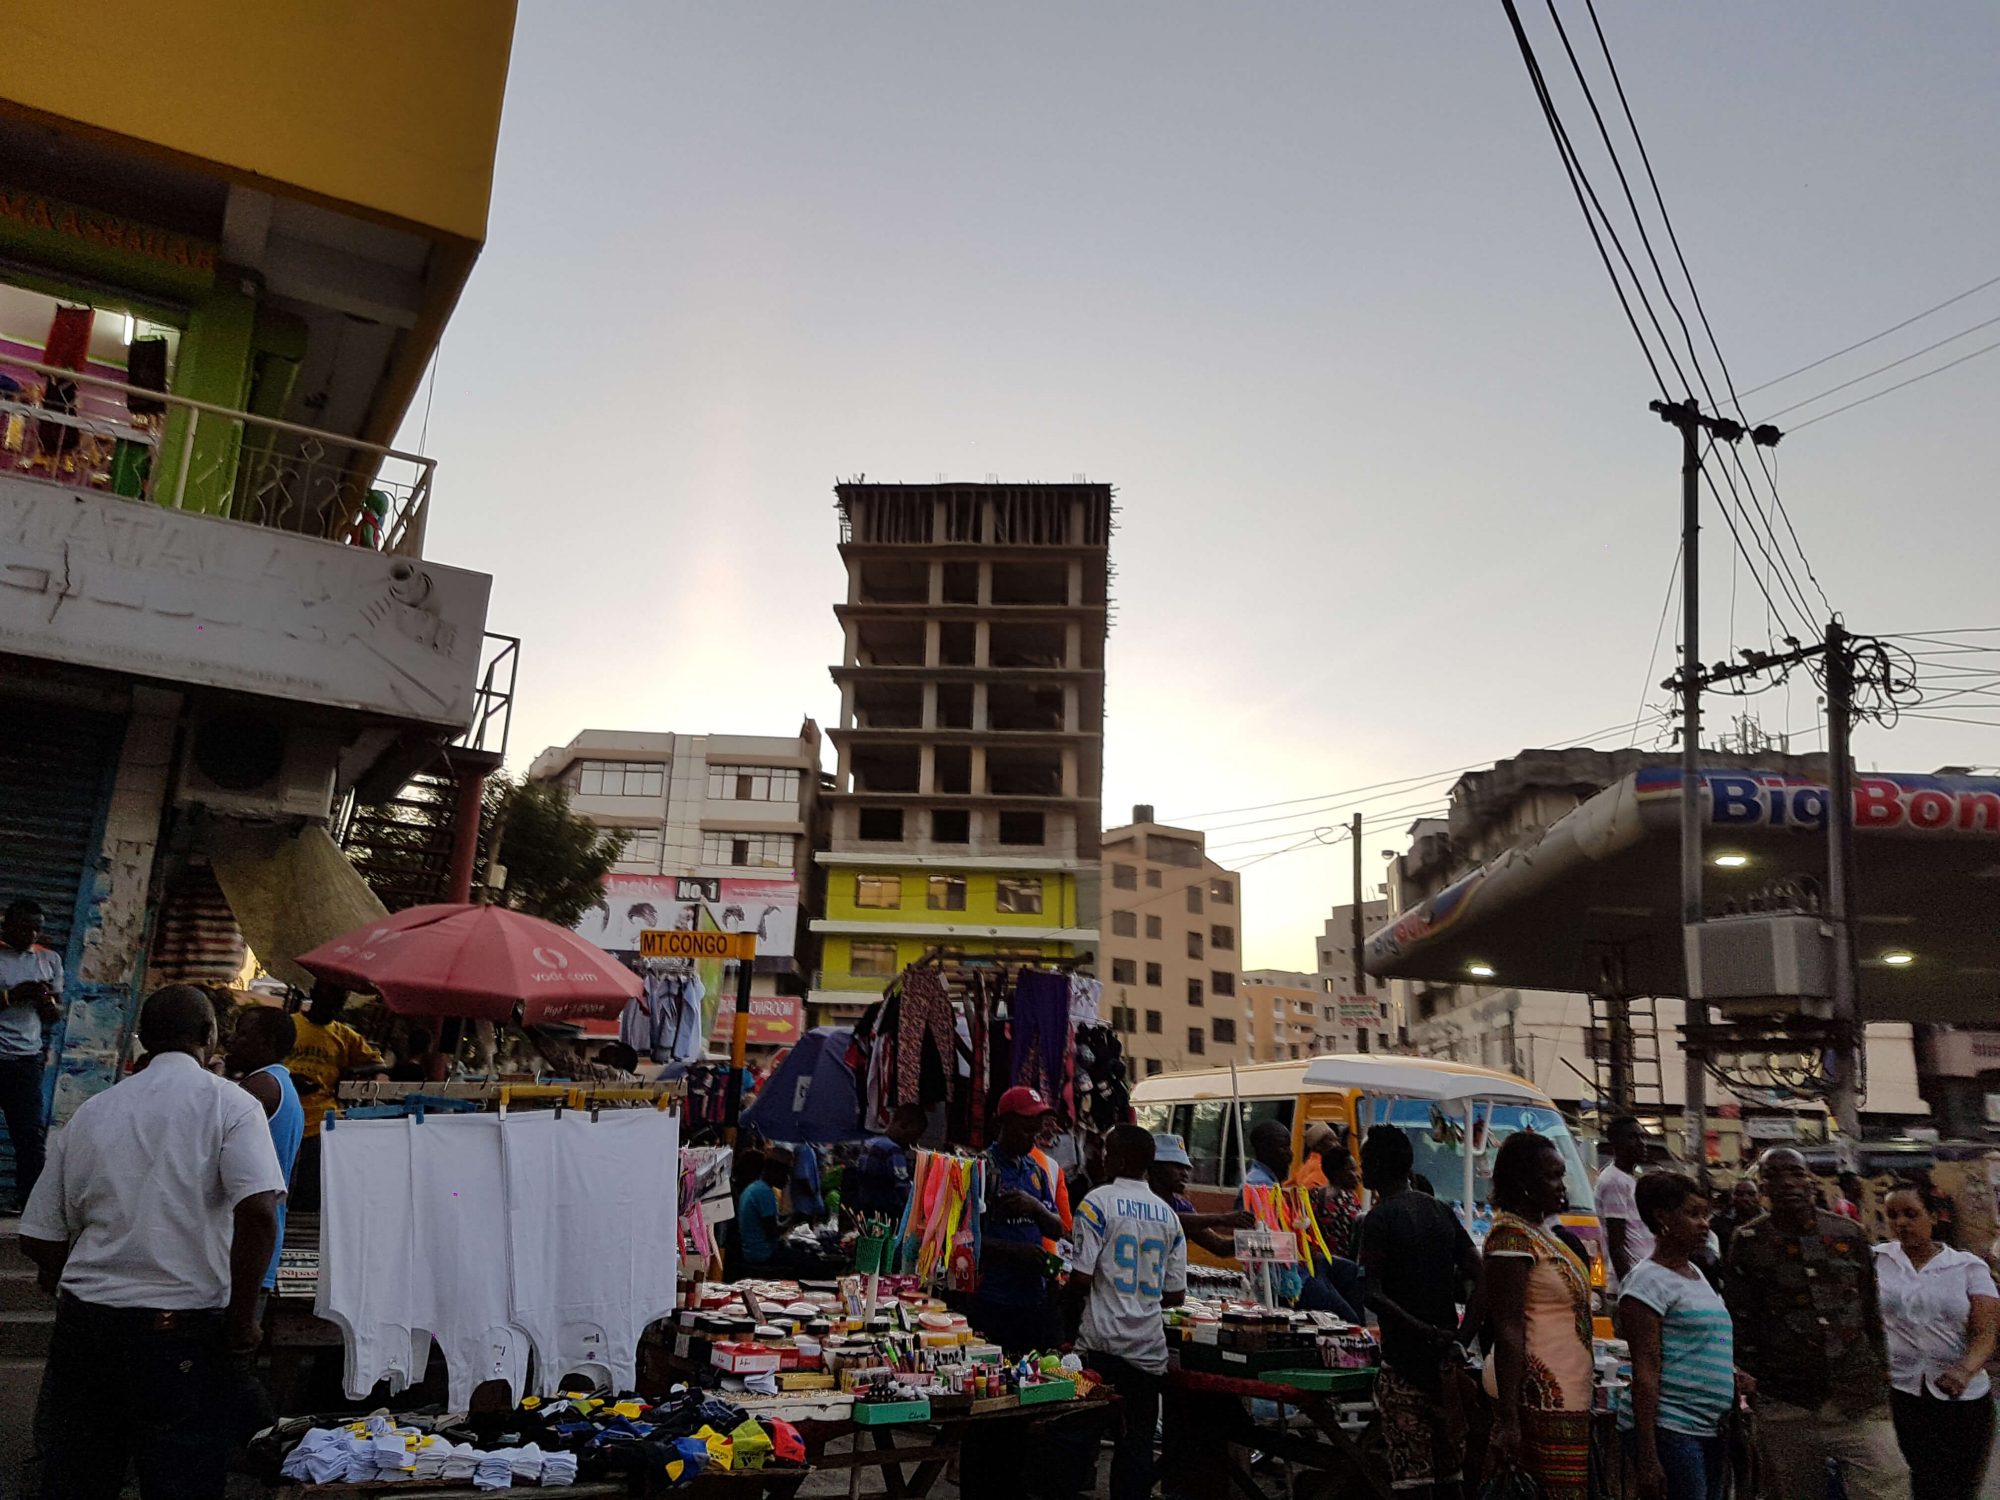 Eintauchen in eine andere Welt - der Markt in Kariakoo in Dar es Salaam